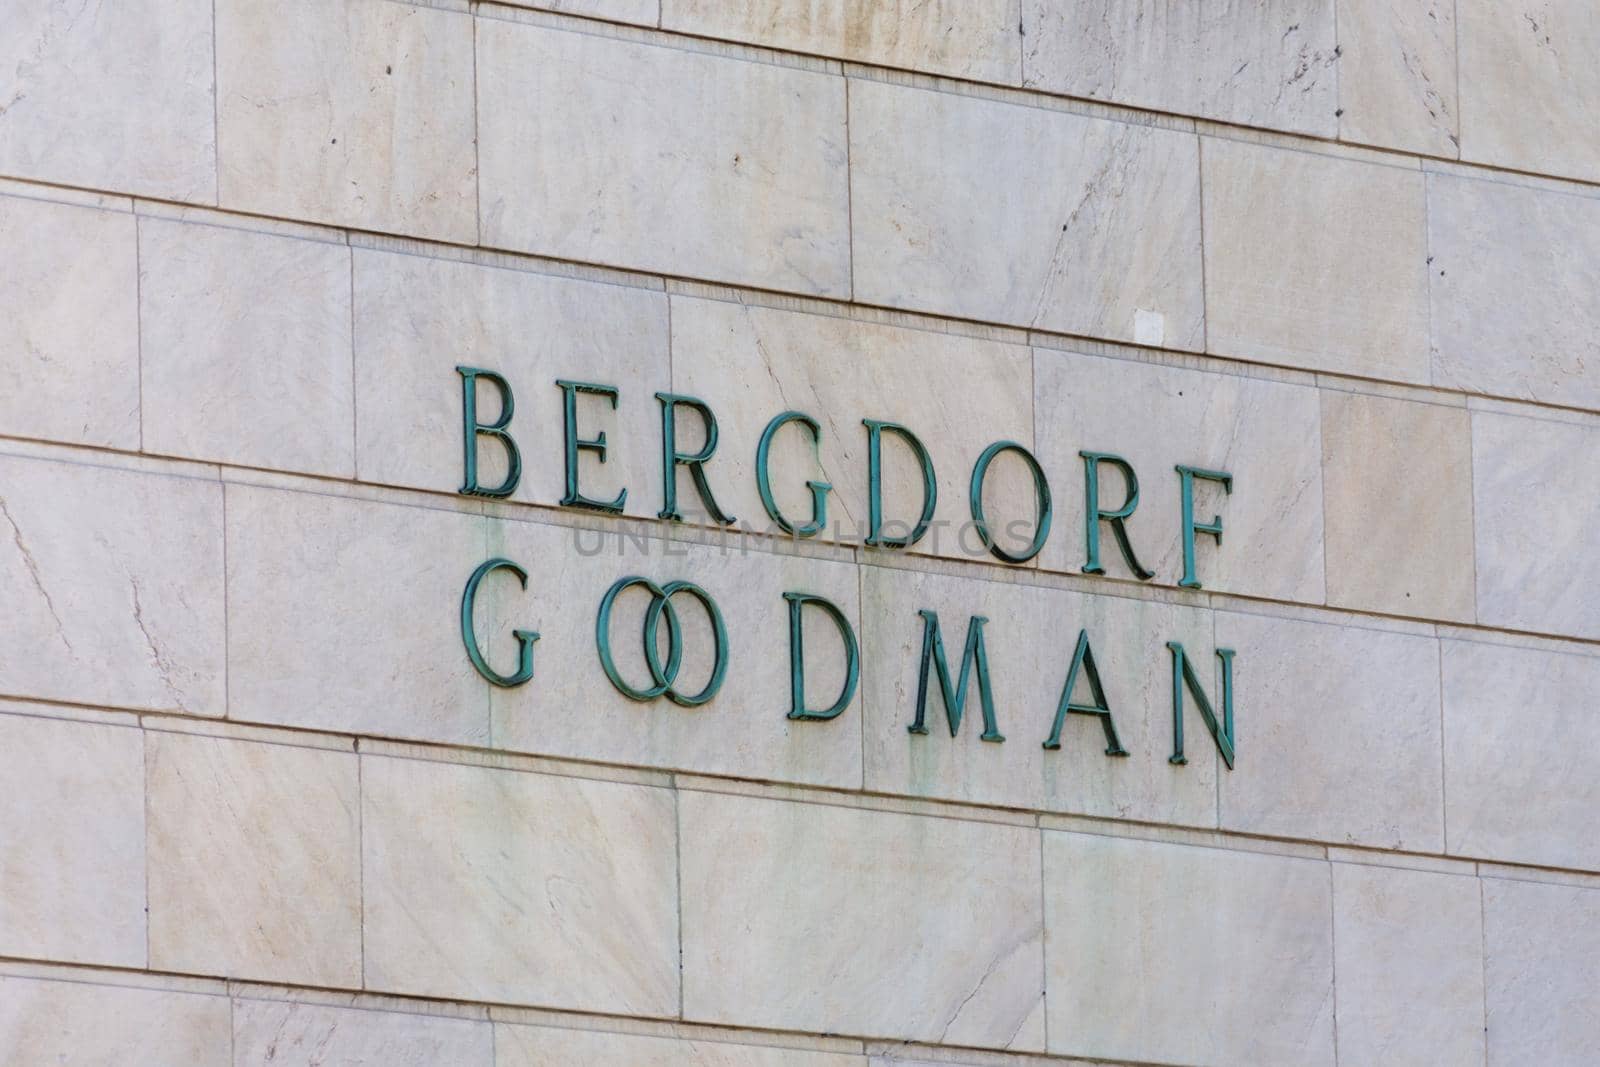 NEW YORK, USA - MAY 15, 2019: Bergdorf Goodman store sign in New York Manhattan